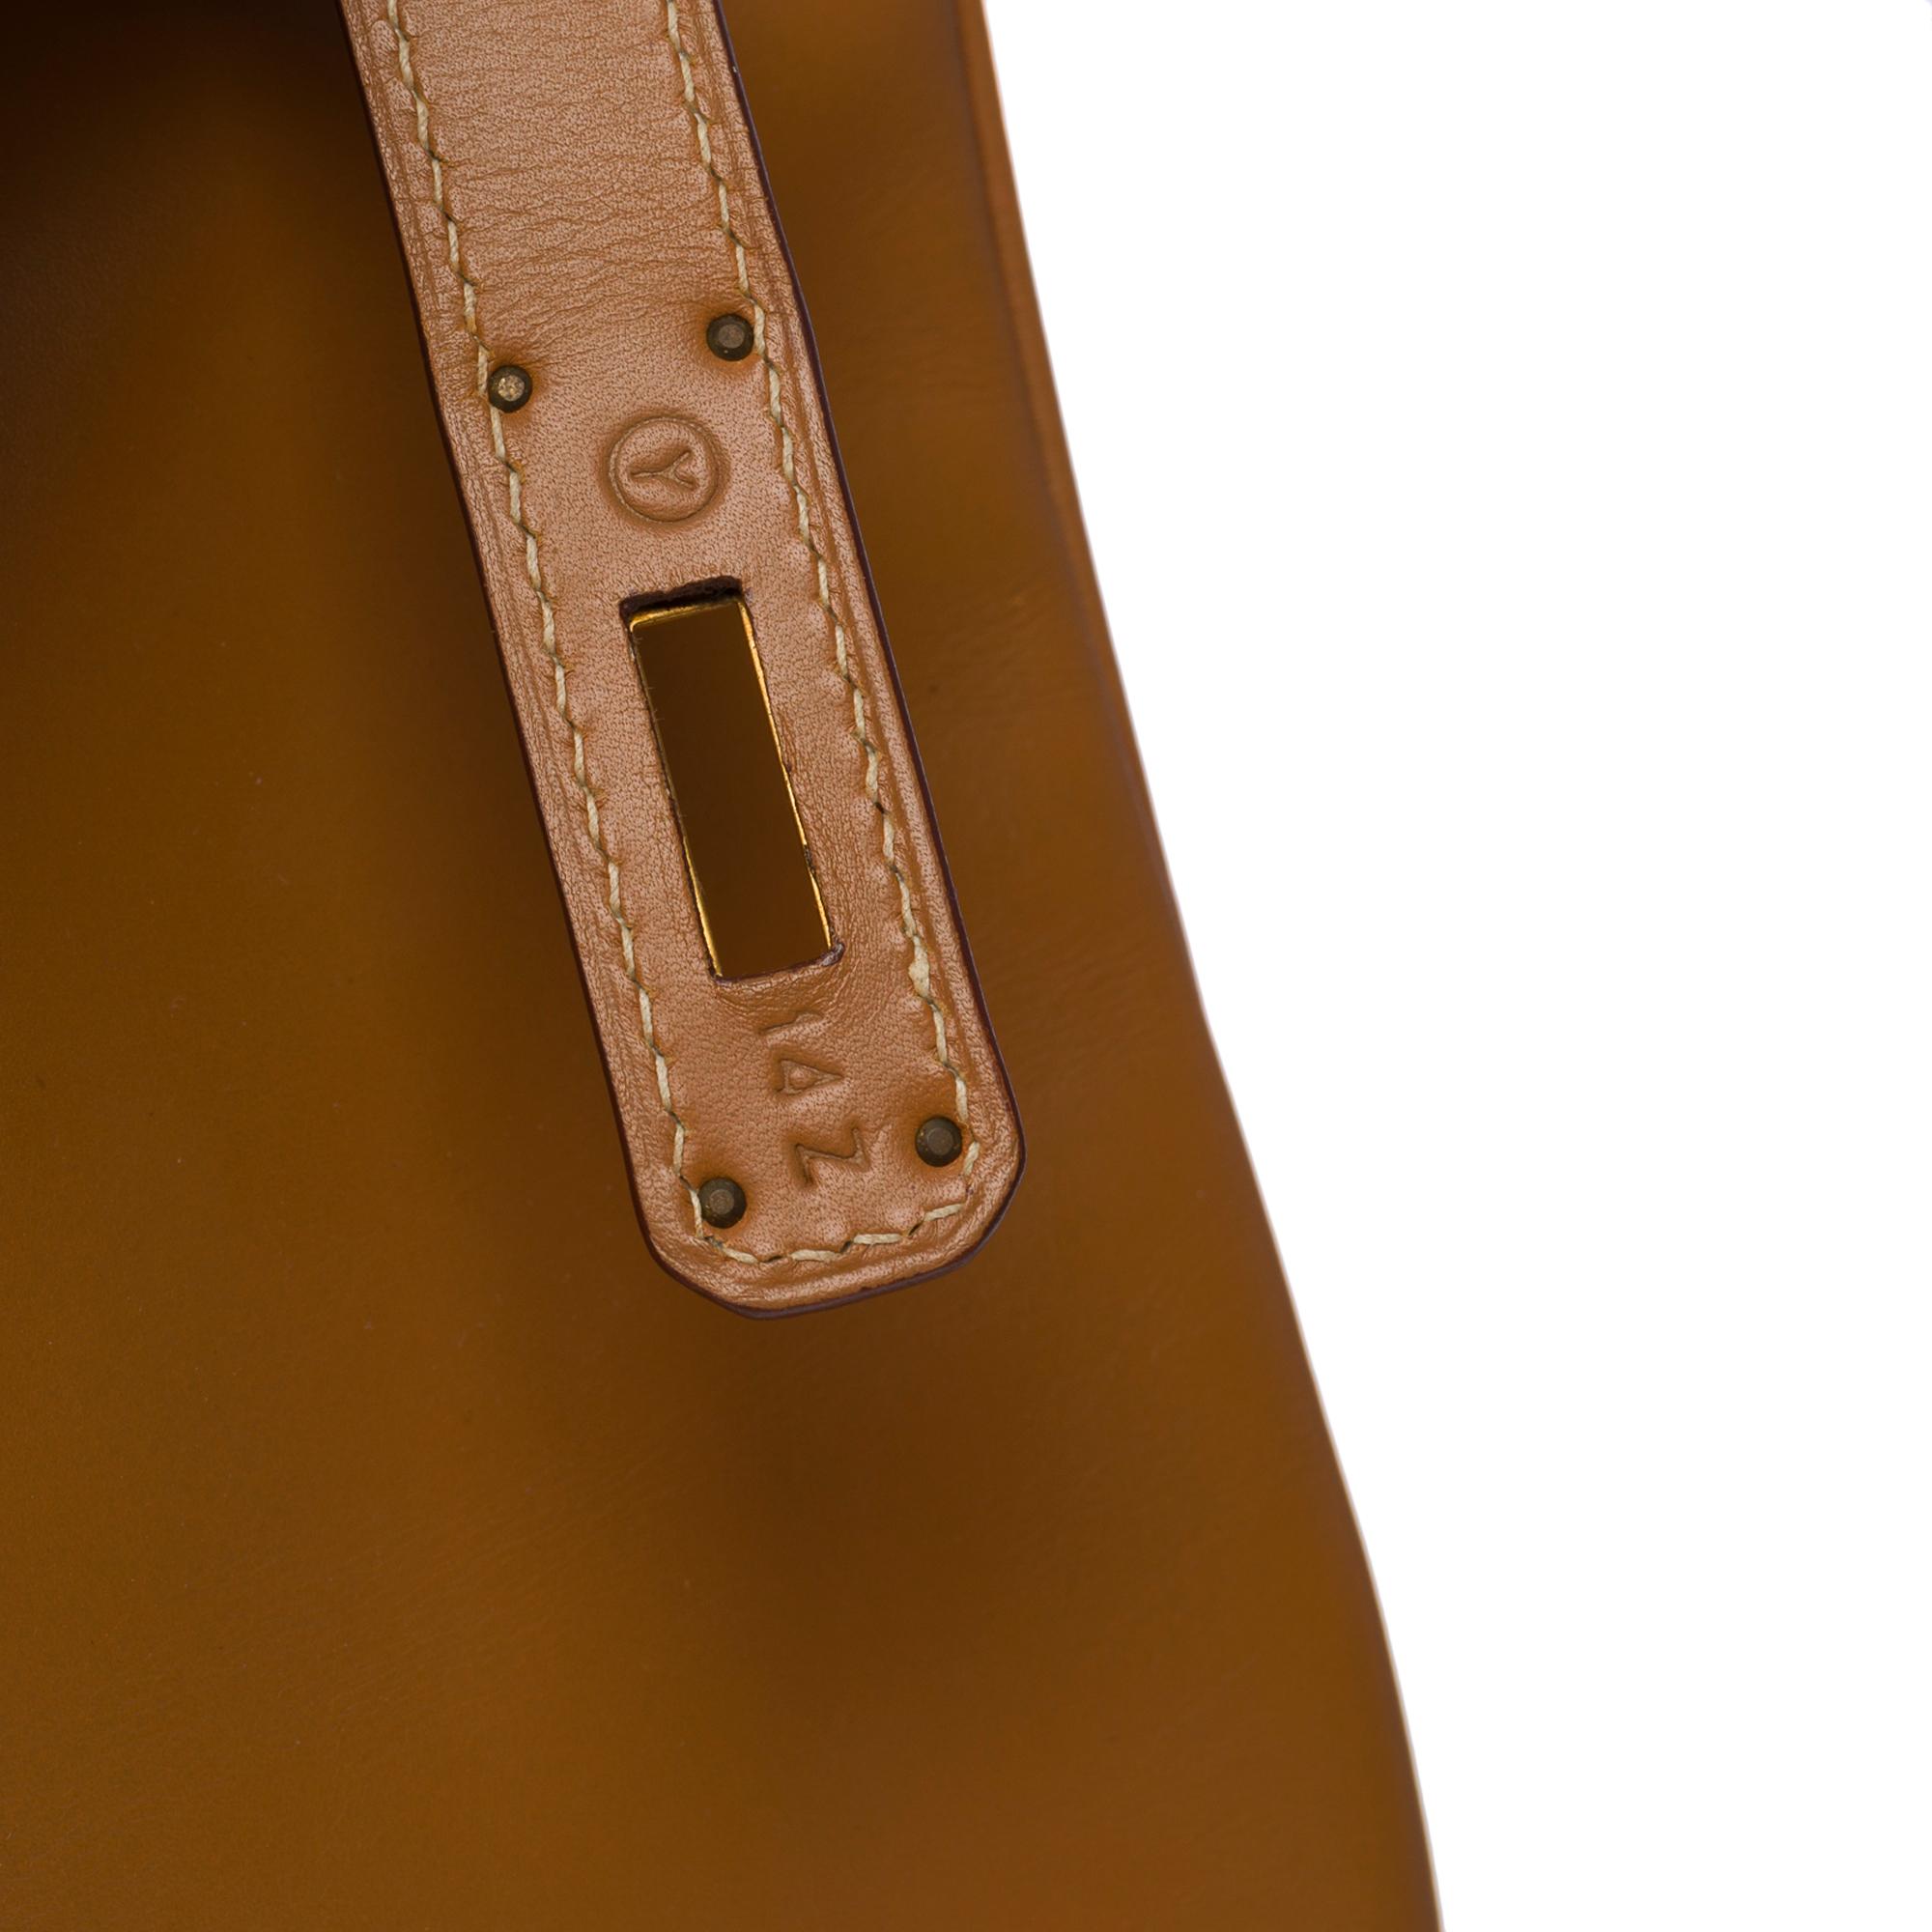 Fantastic Hermes Birkin 40 handbag in Camel (Gold) Chamonix leather, GHW For Sale 2